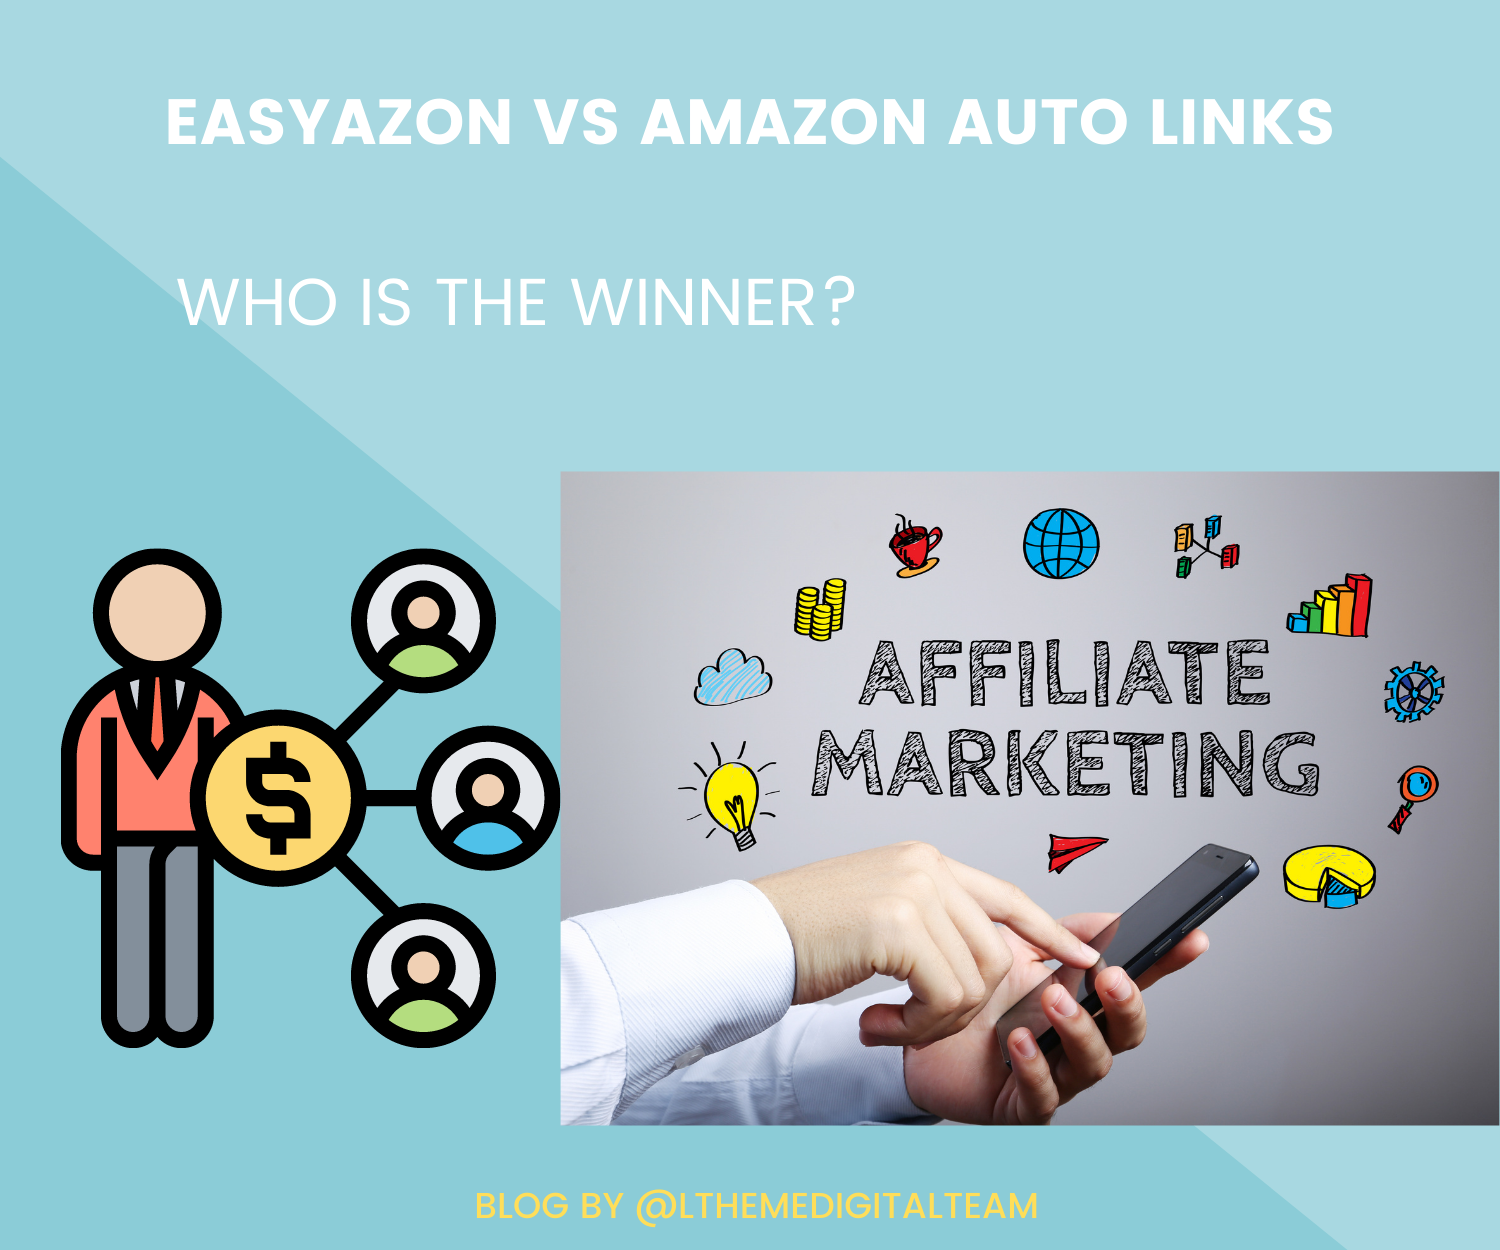 EasyAzon Vs Amazon Auto Links: Who is winner?